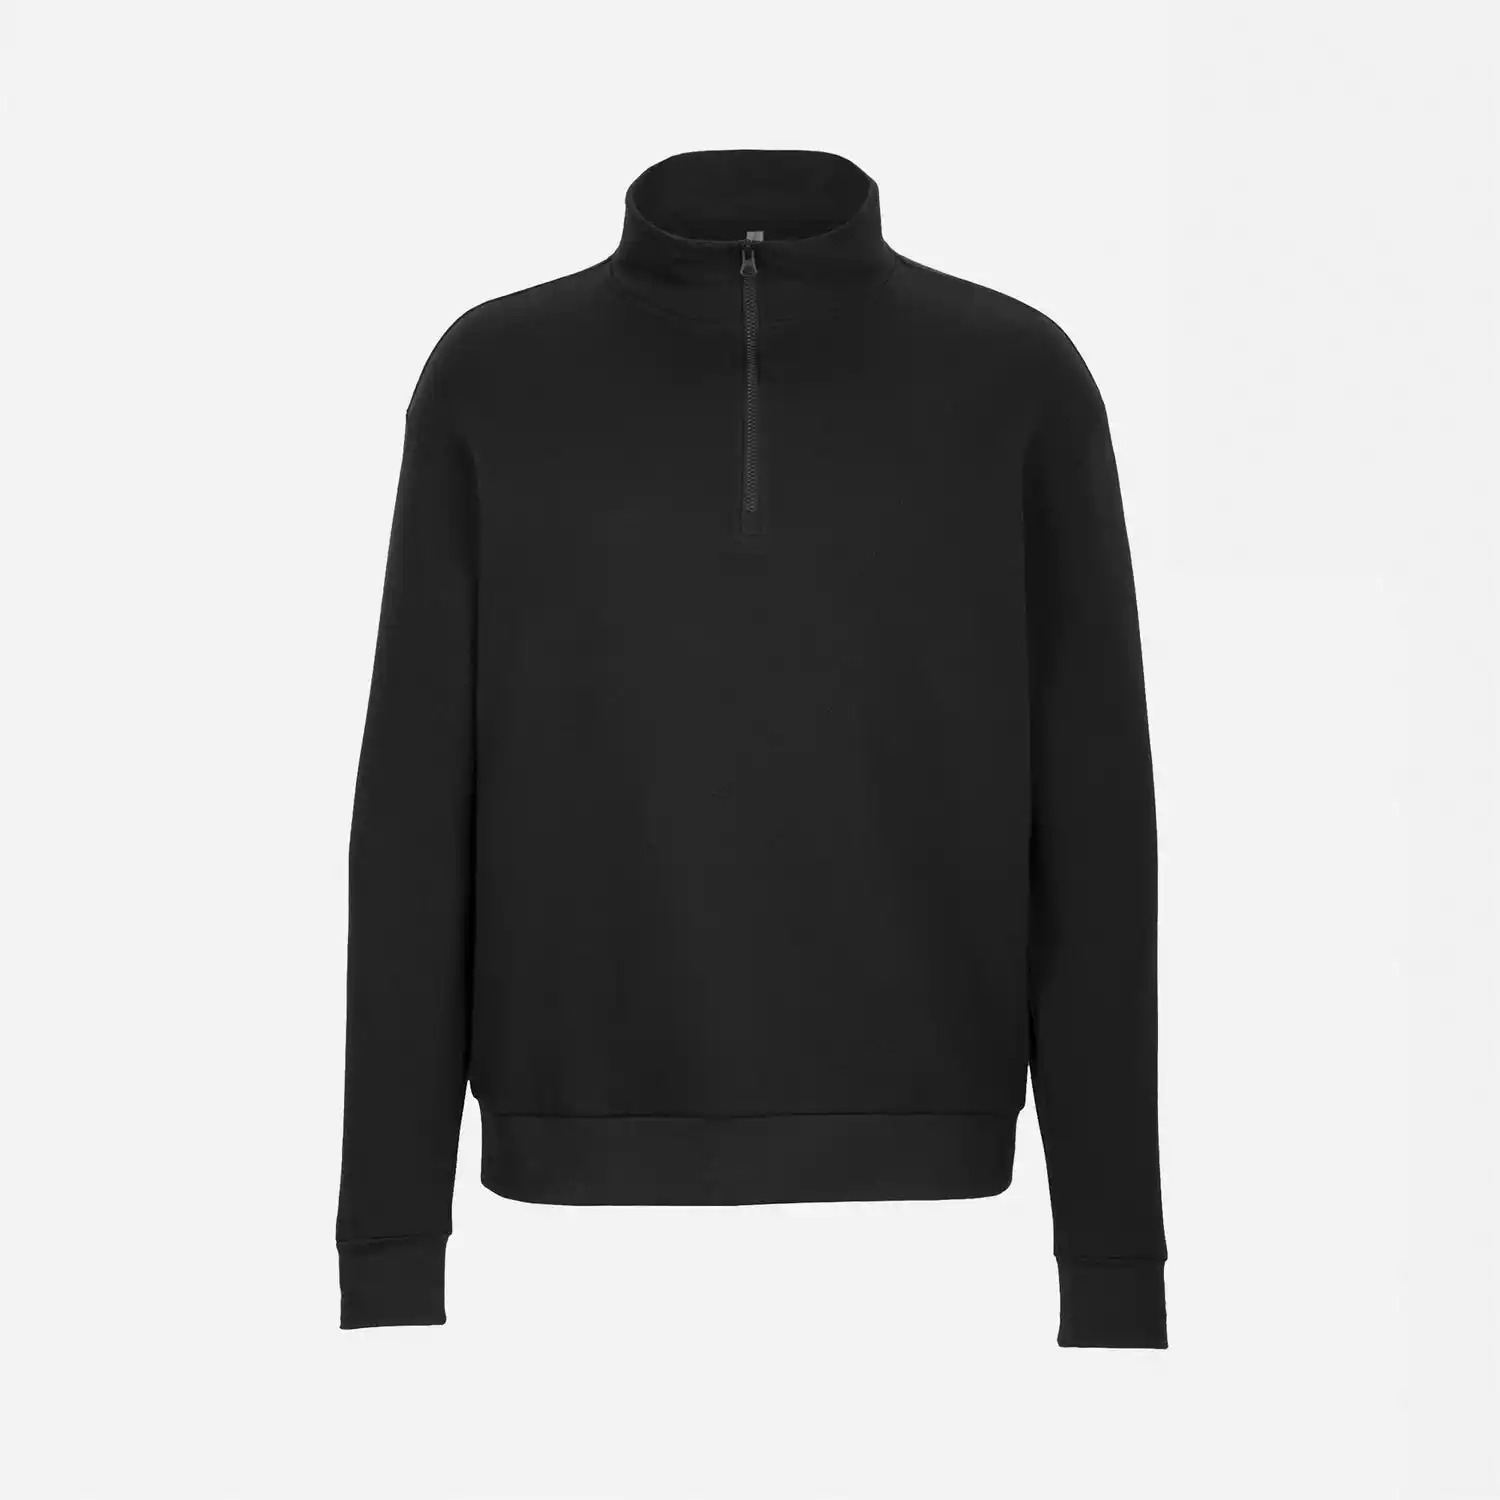 Cheap Price Men Women Unisex Fleece Quarter Zip Black sweatshirt pullover 100% cotton quarter zip turtle-neck collar Sweatshirt